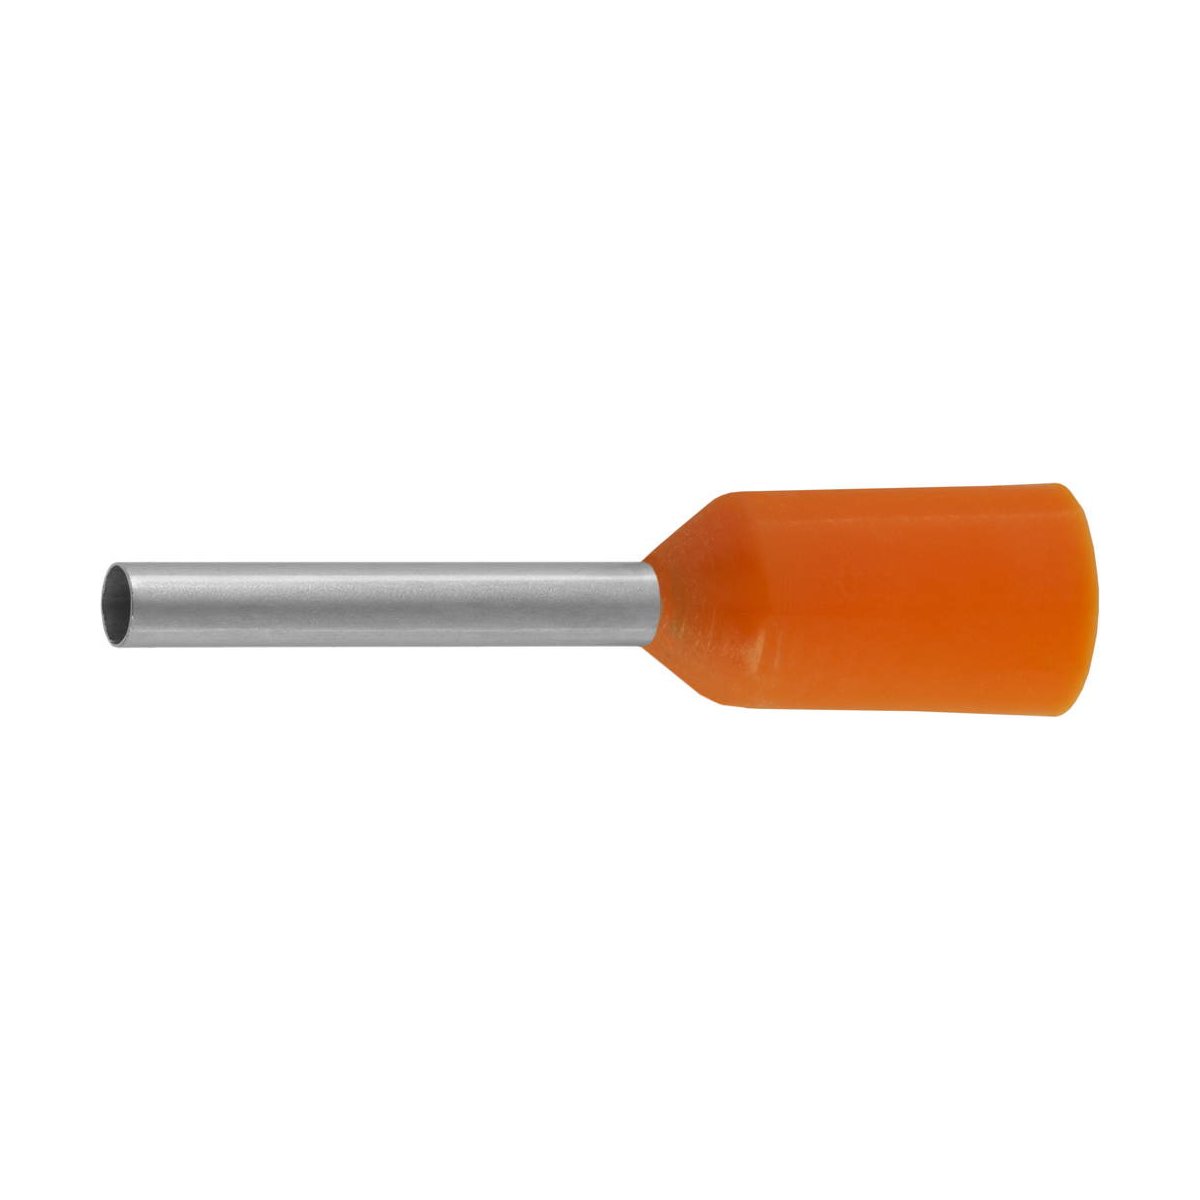 СВЕТОЗАР 0, 5 мм, оранжевый, 25 шт., наконечник штыревой 49400-05